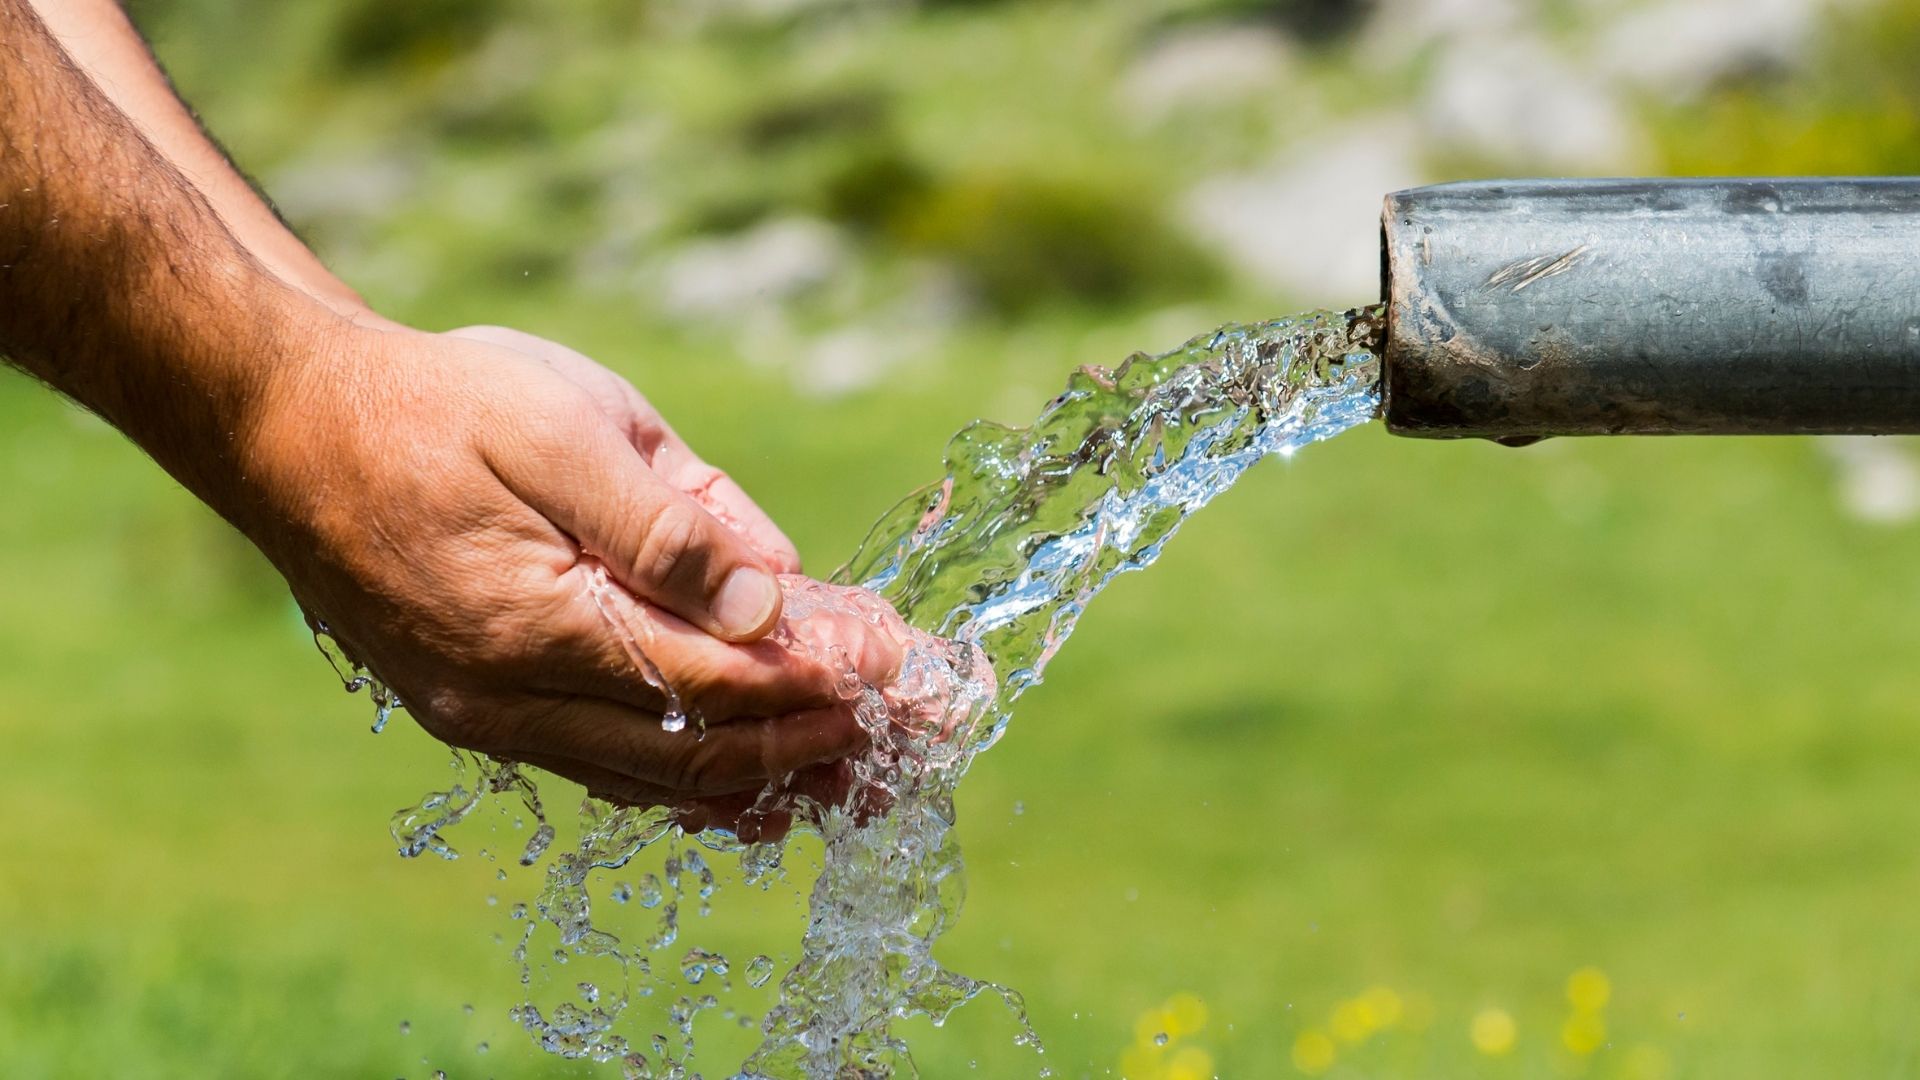  Artigo: Escassez de água potável e o estopim de conflitos internacionais